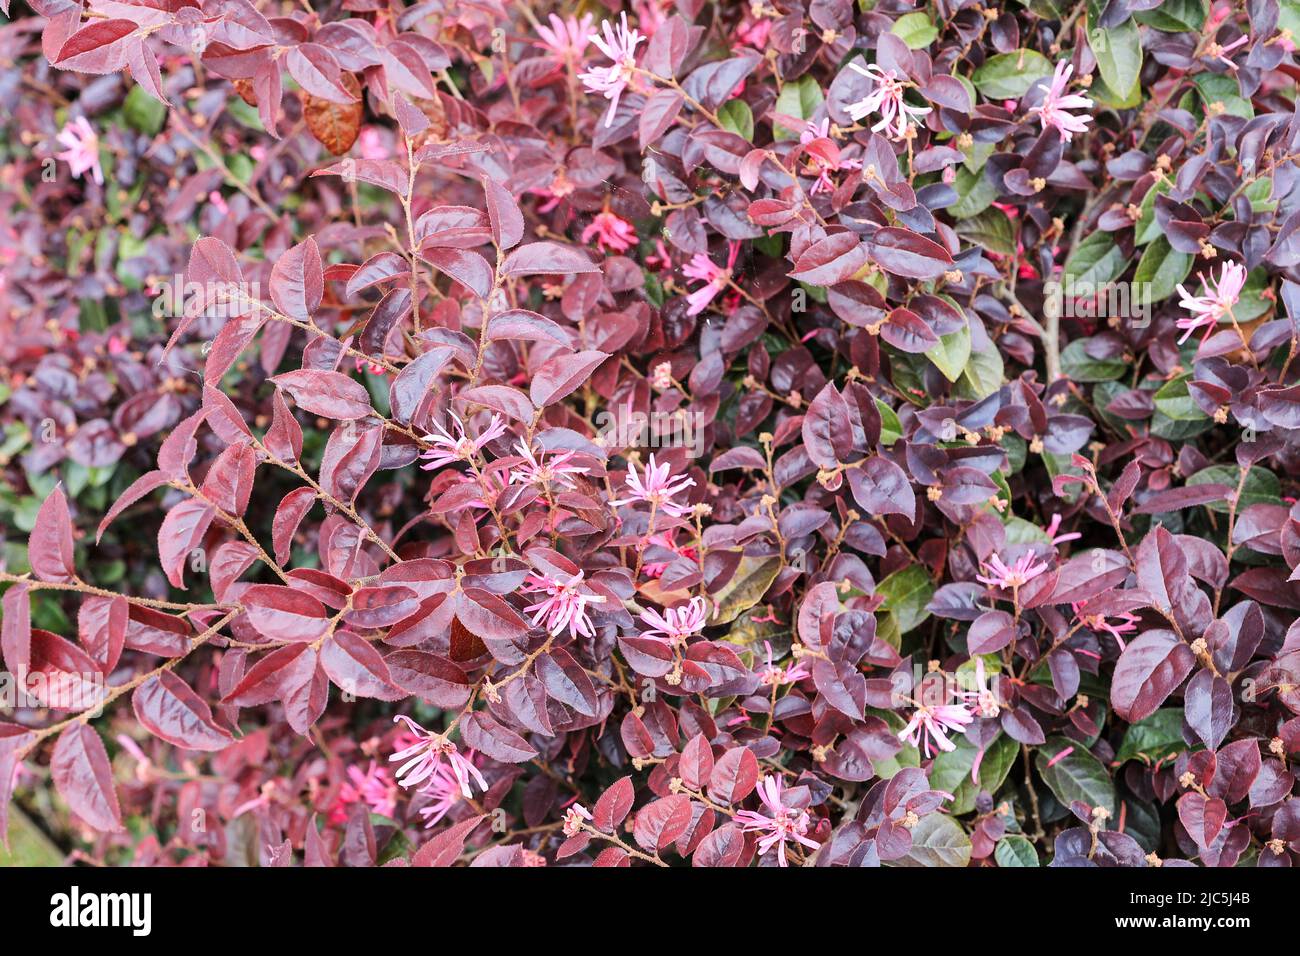 A pink flowering Loropetalum or Chinese fringe flower (Loropetalum chinense) or strap flower bush or shrub Stock Photo